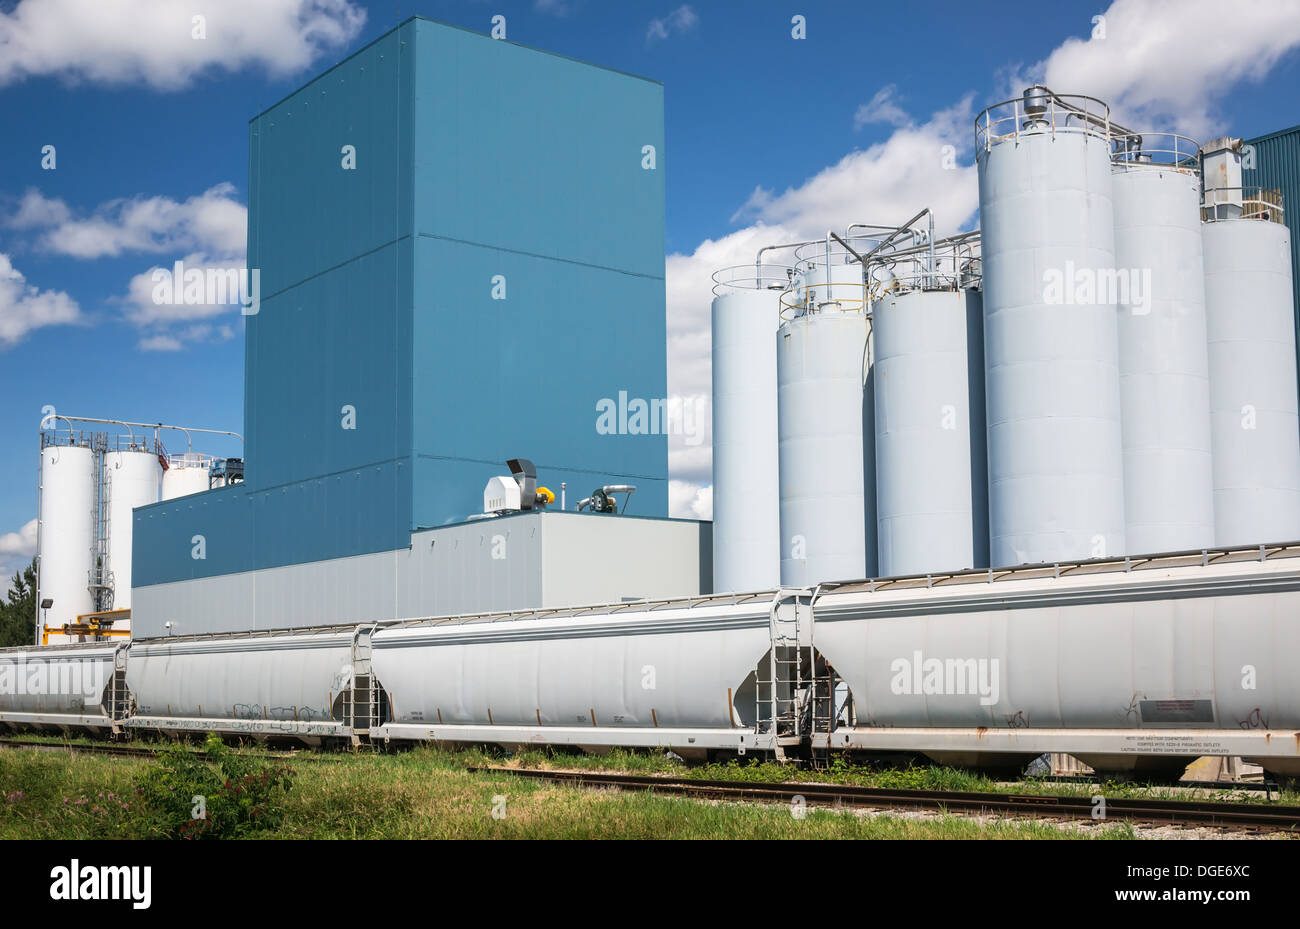 Impianto industriale con silos contro il cielo blu Foto Stock